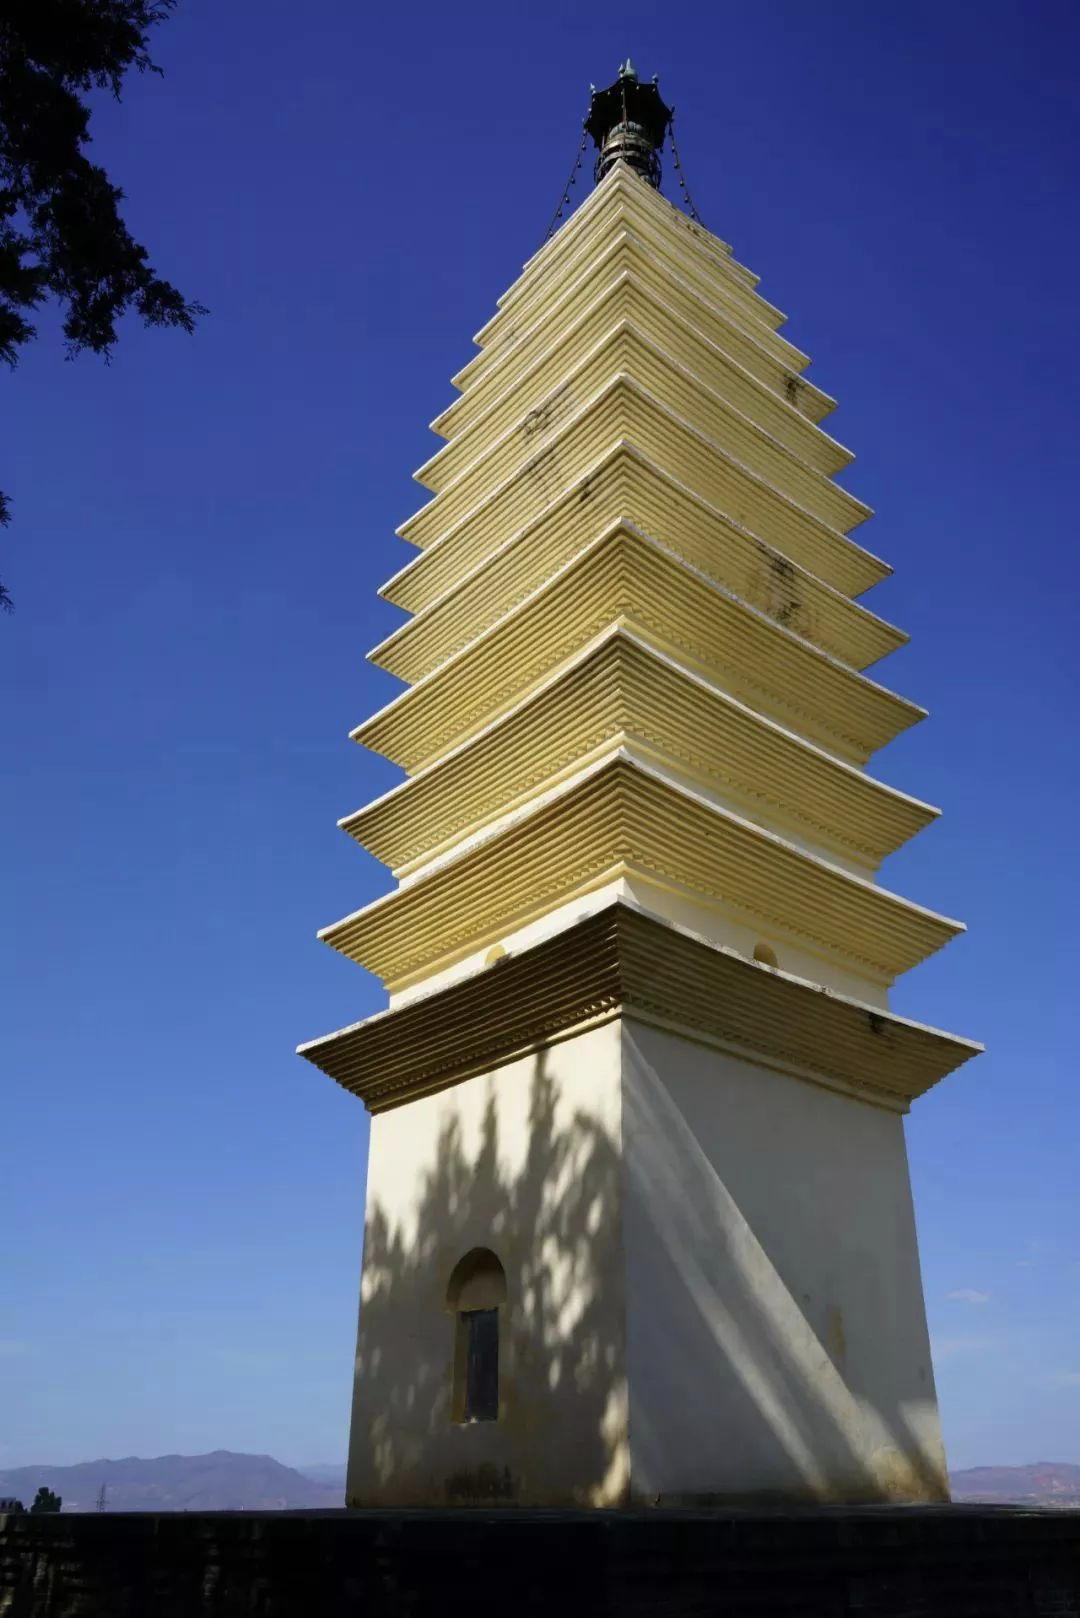 俗称蛇骨塔,建于南诏时期,位于南诏都城太和城城南,塔为方形十三级